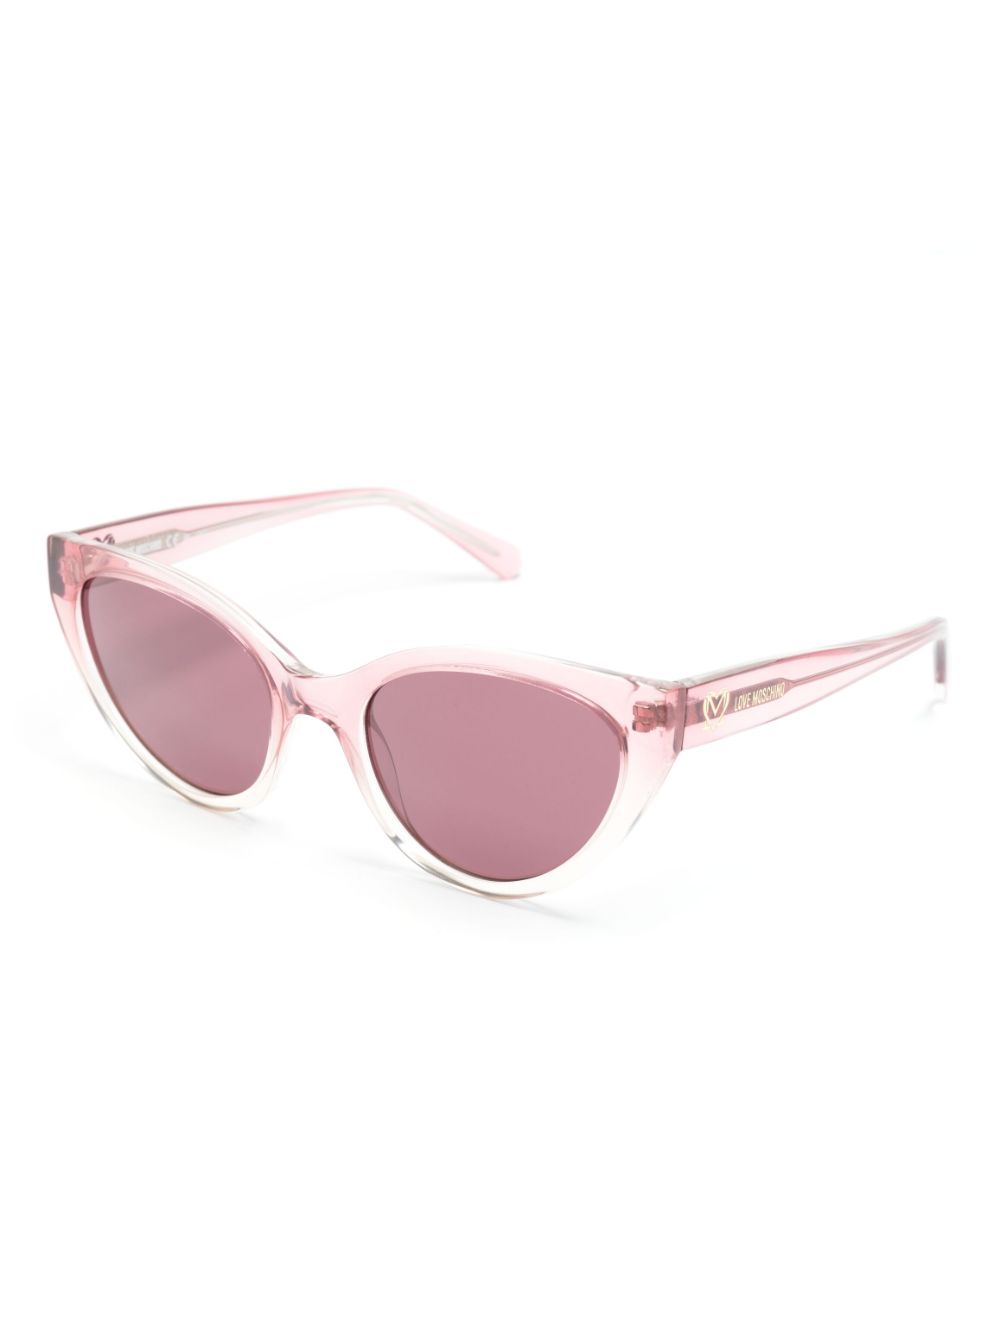 Love Moschino M0L064 zonnebril met cat-eye montuur - Roze